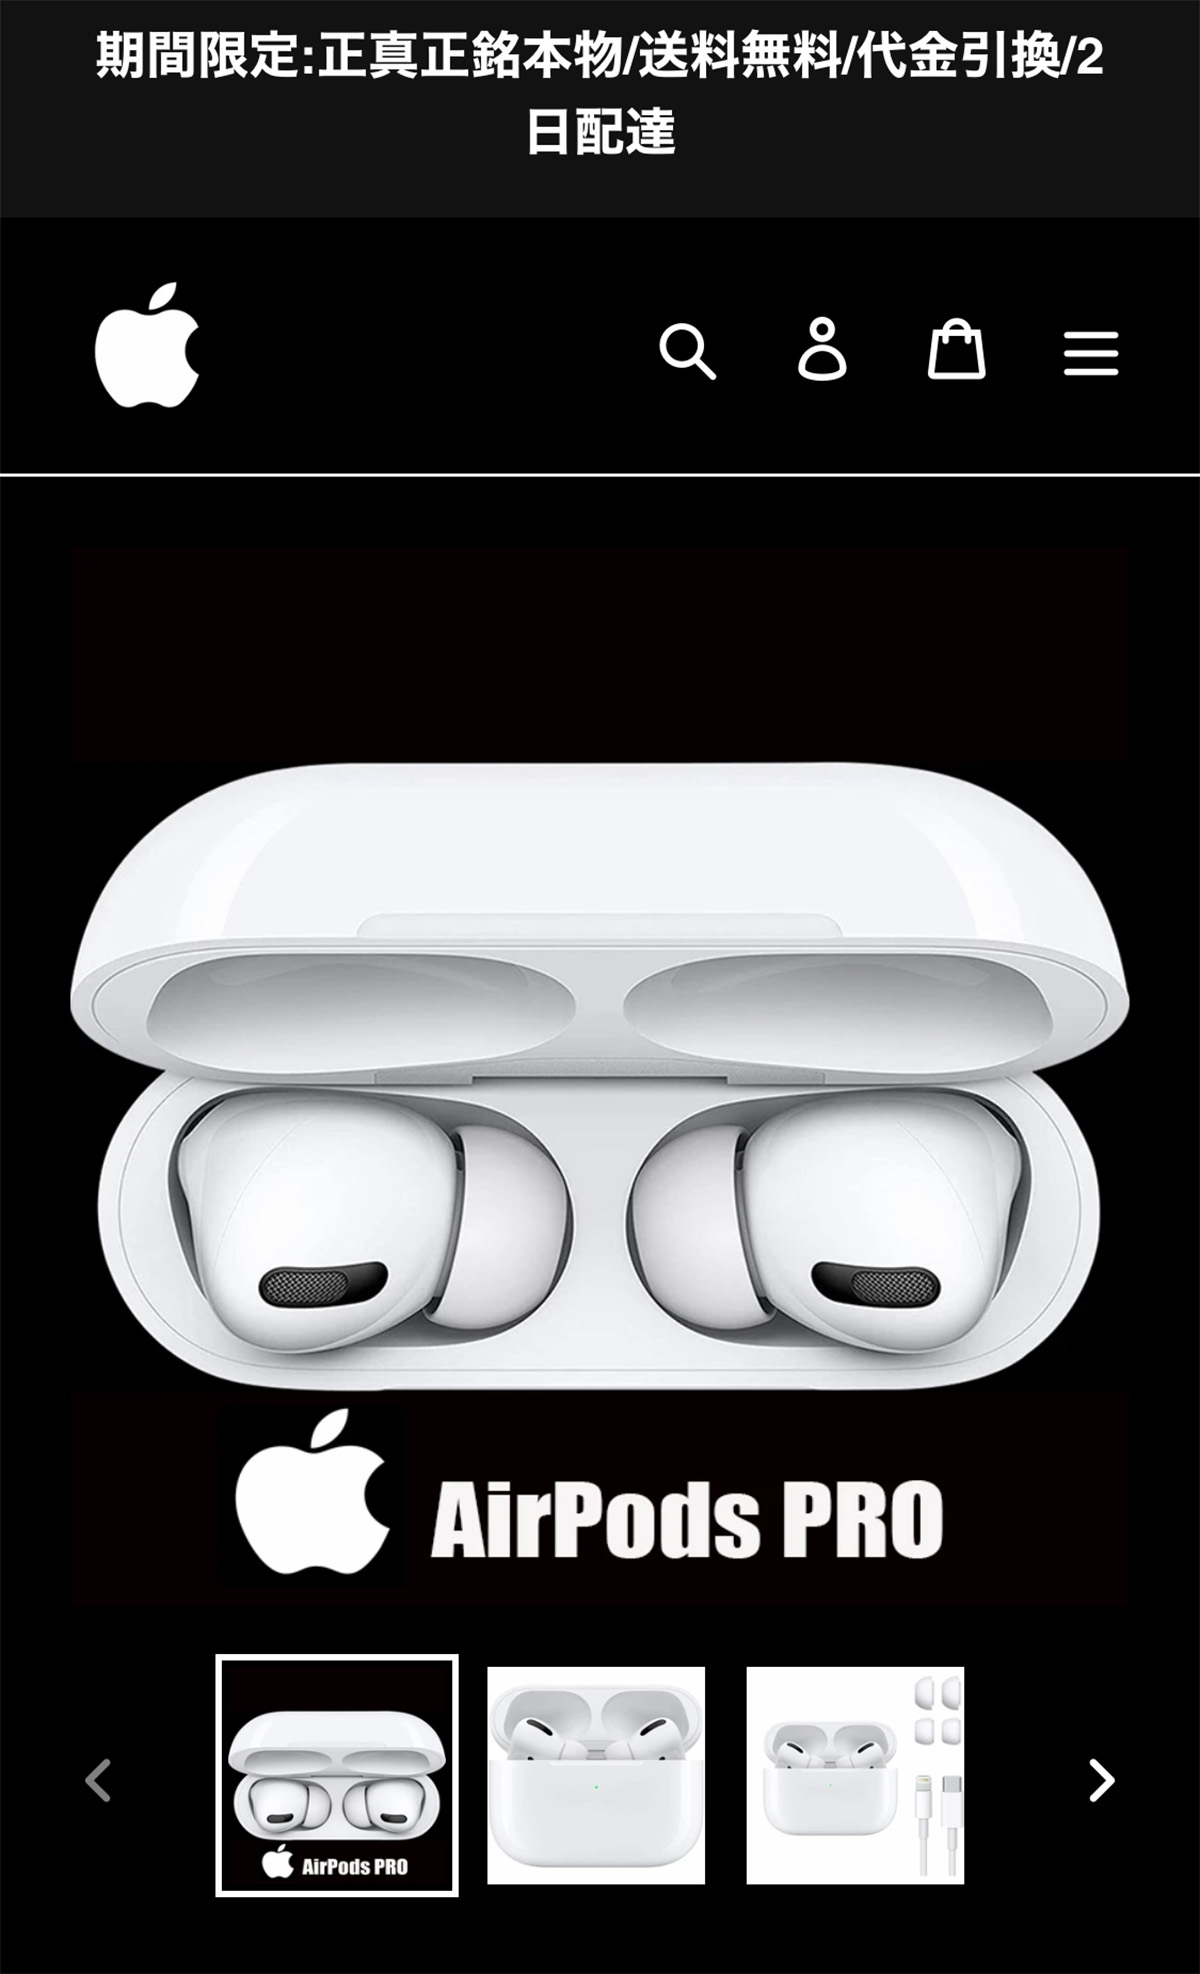 実録】正真正銘本物の正規品なのに価格が怪しく安い「AirPods Pro